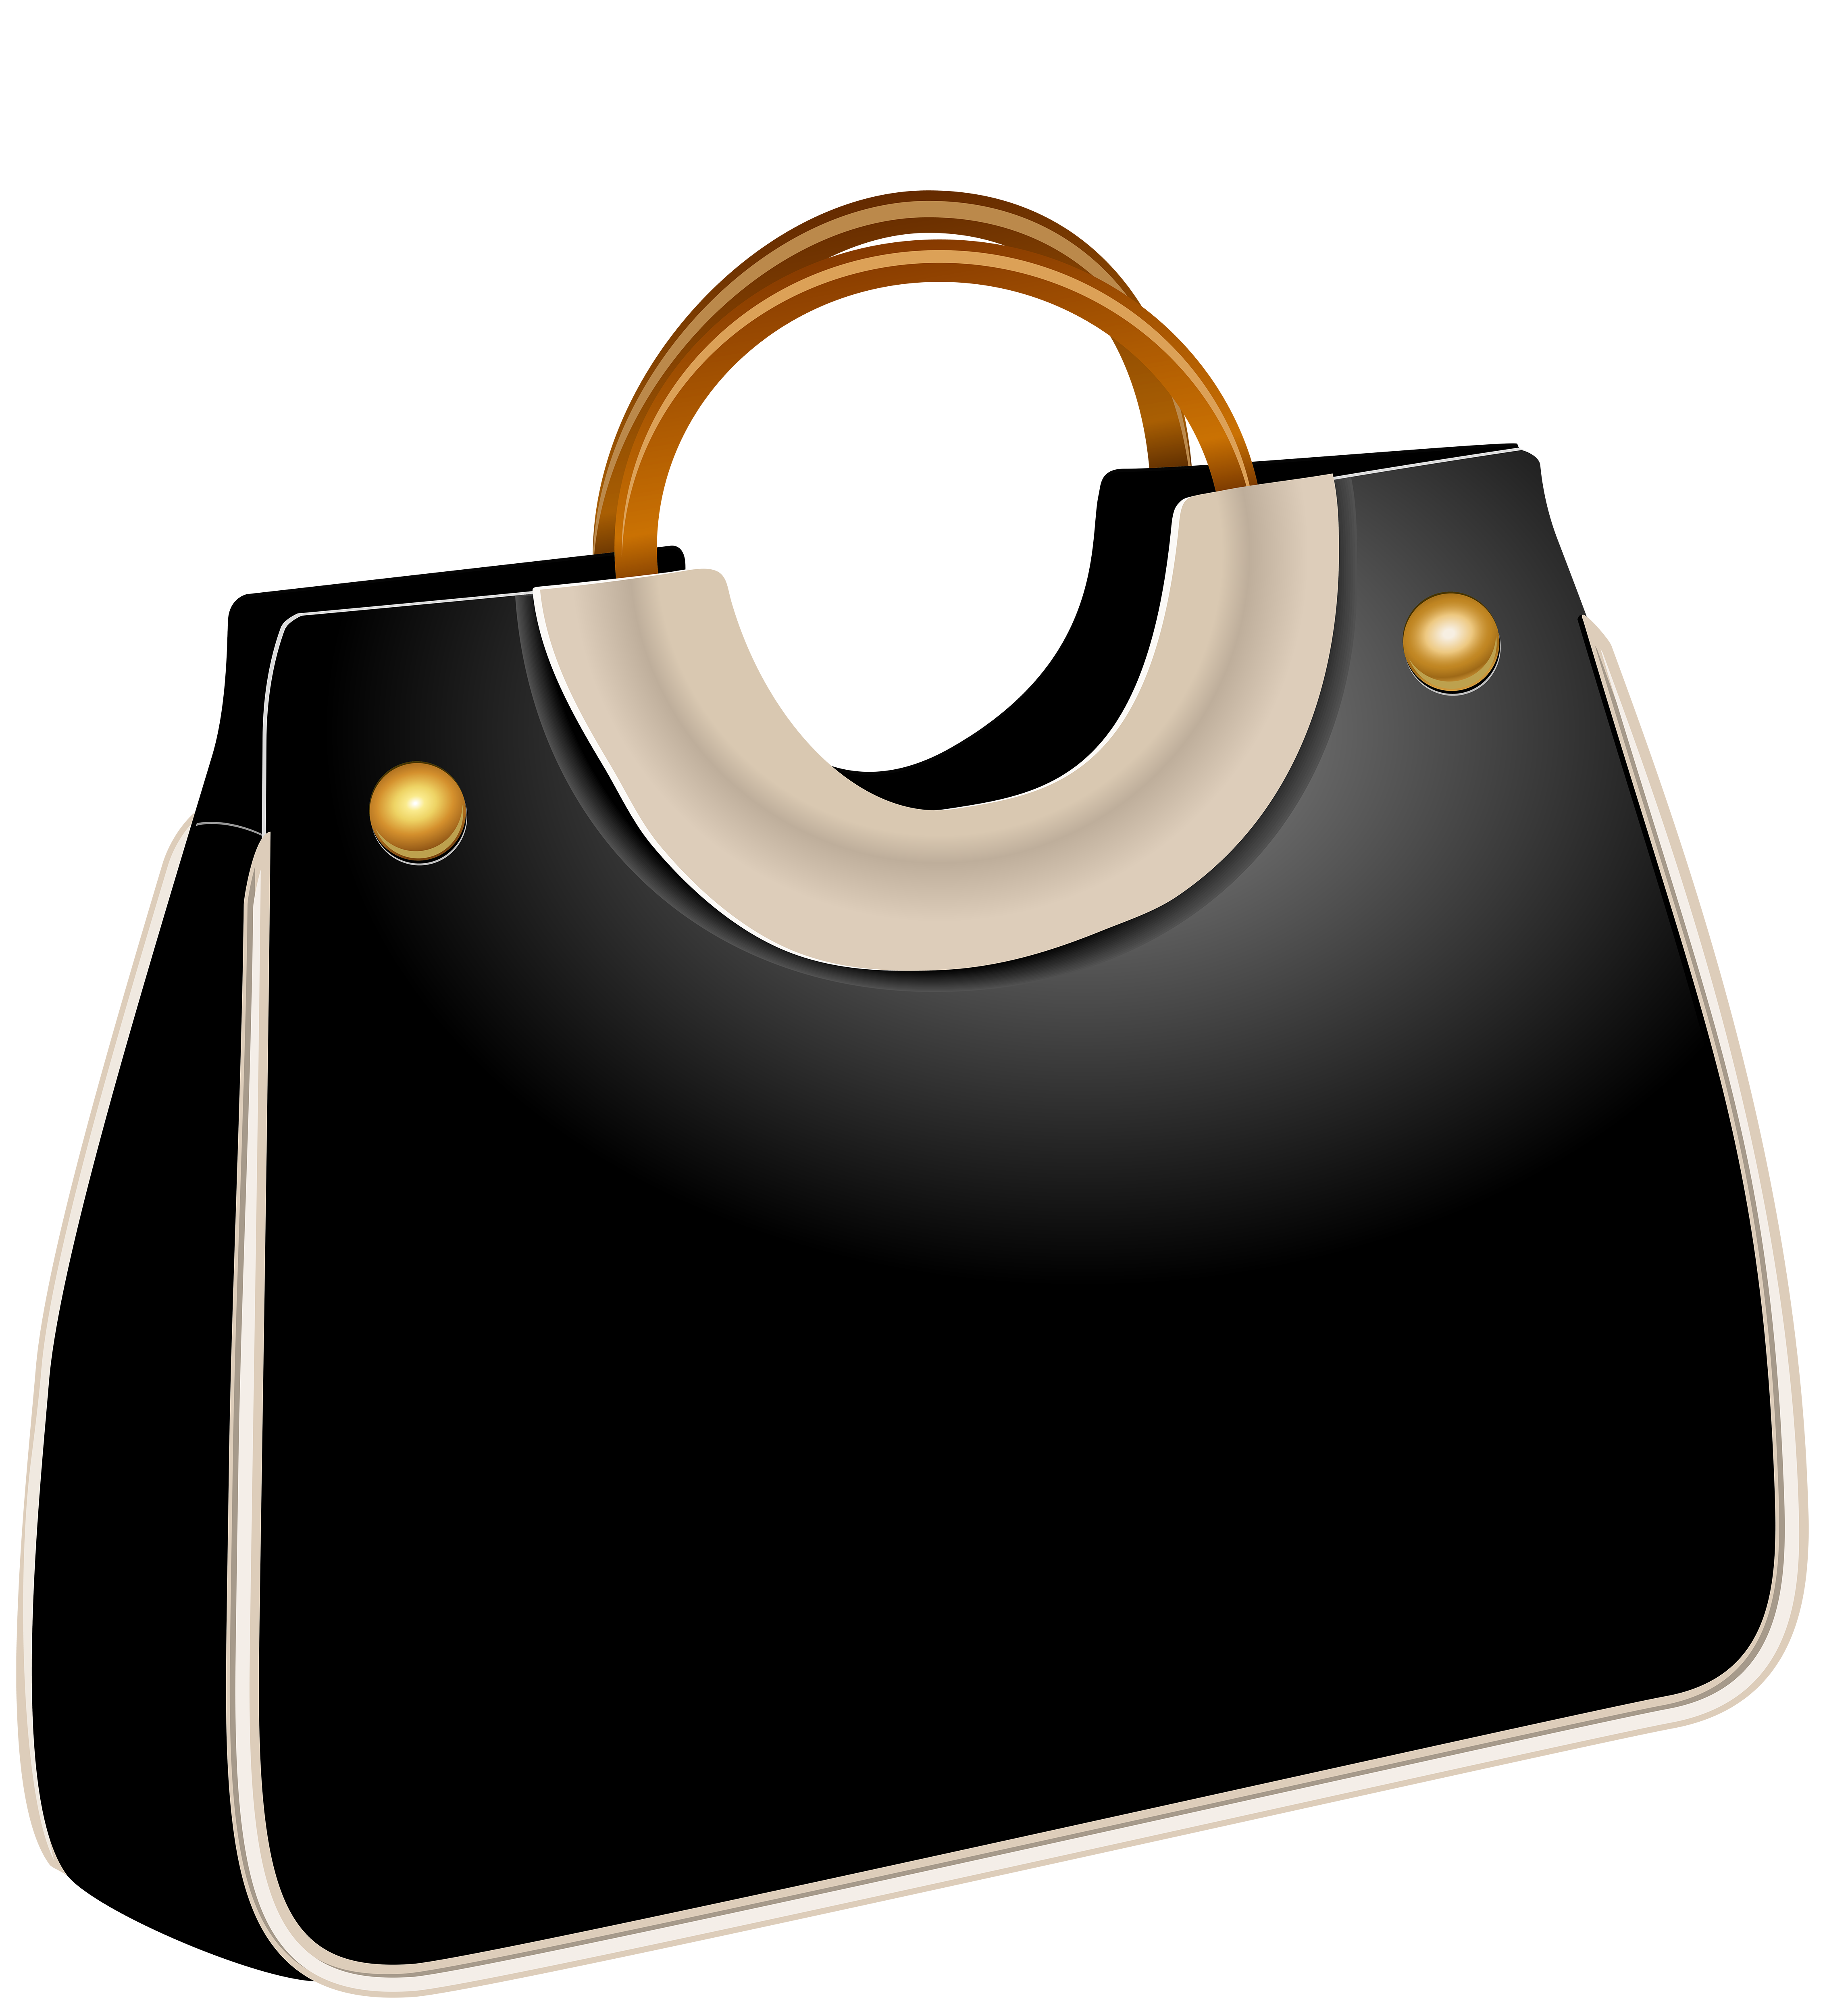 Handbag Black Png Clip Art Best Web Clipart